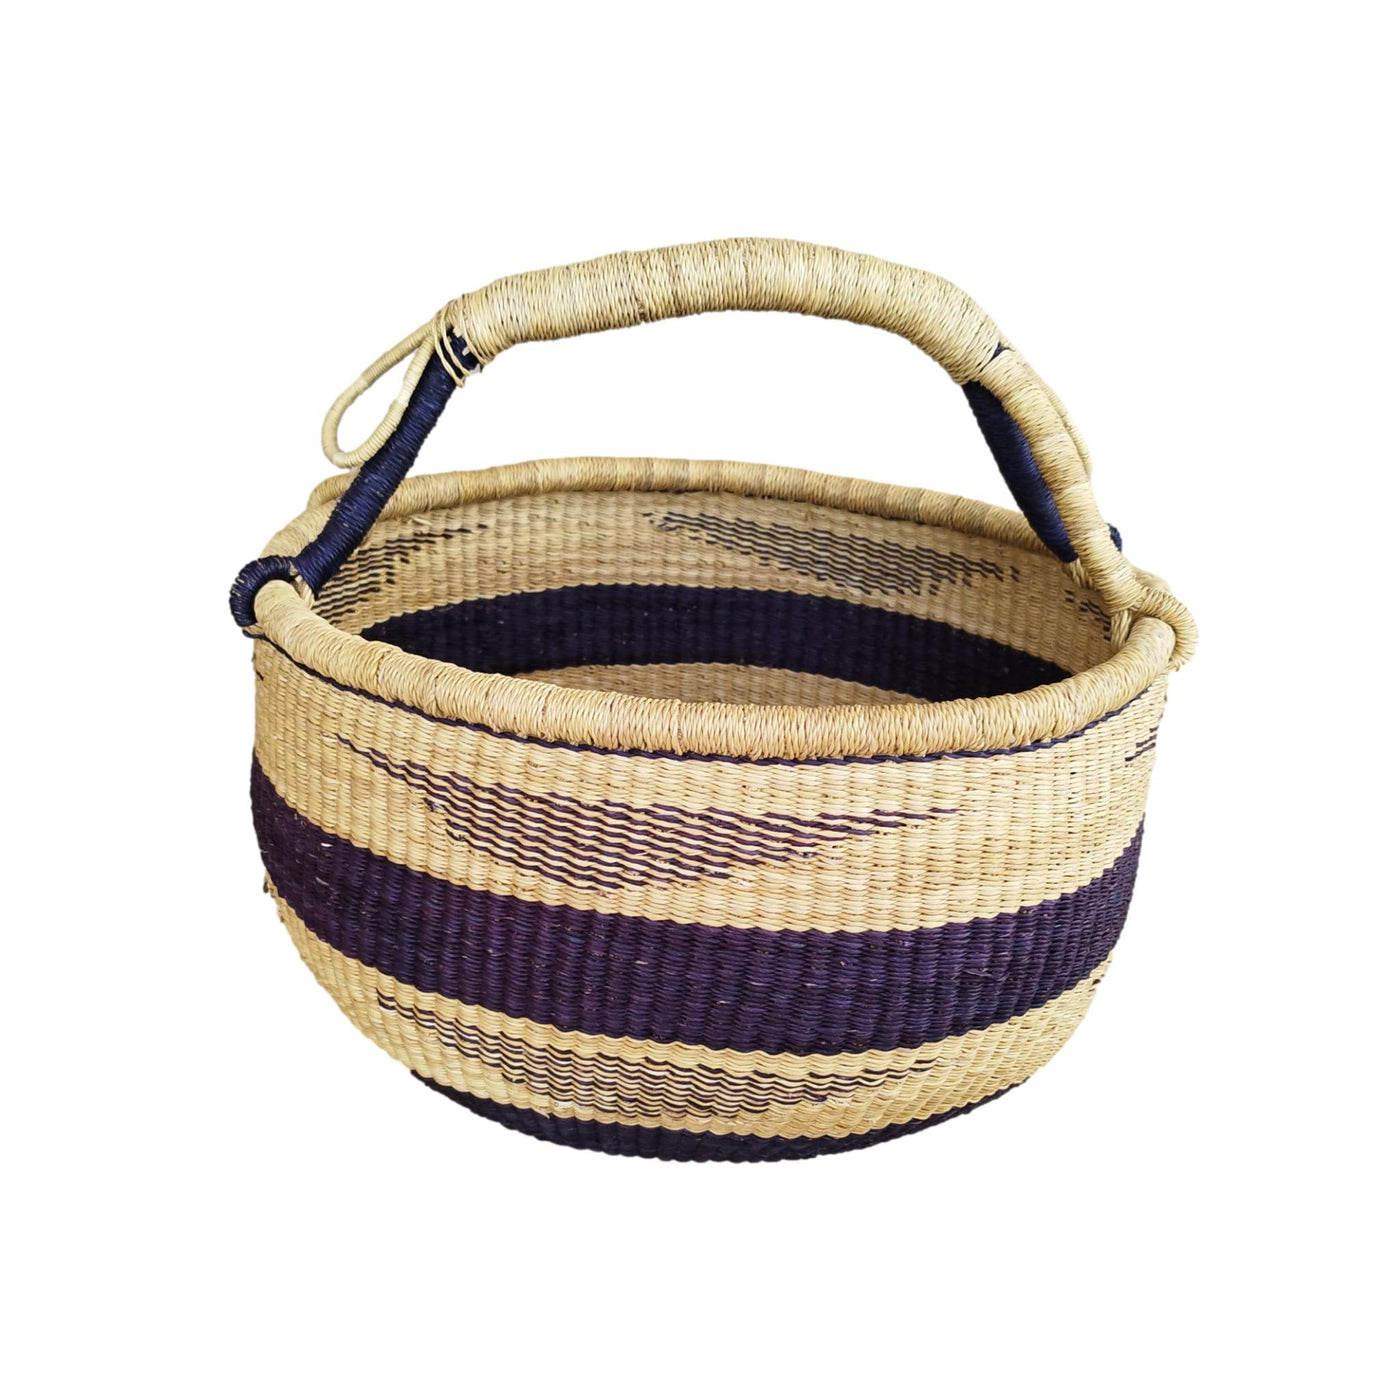 Large storage Basket | Bolga Basket | Baby gift basket | Bolga market basket | Woven Basket | Straw bag | African Basket